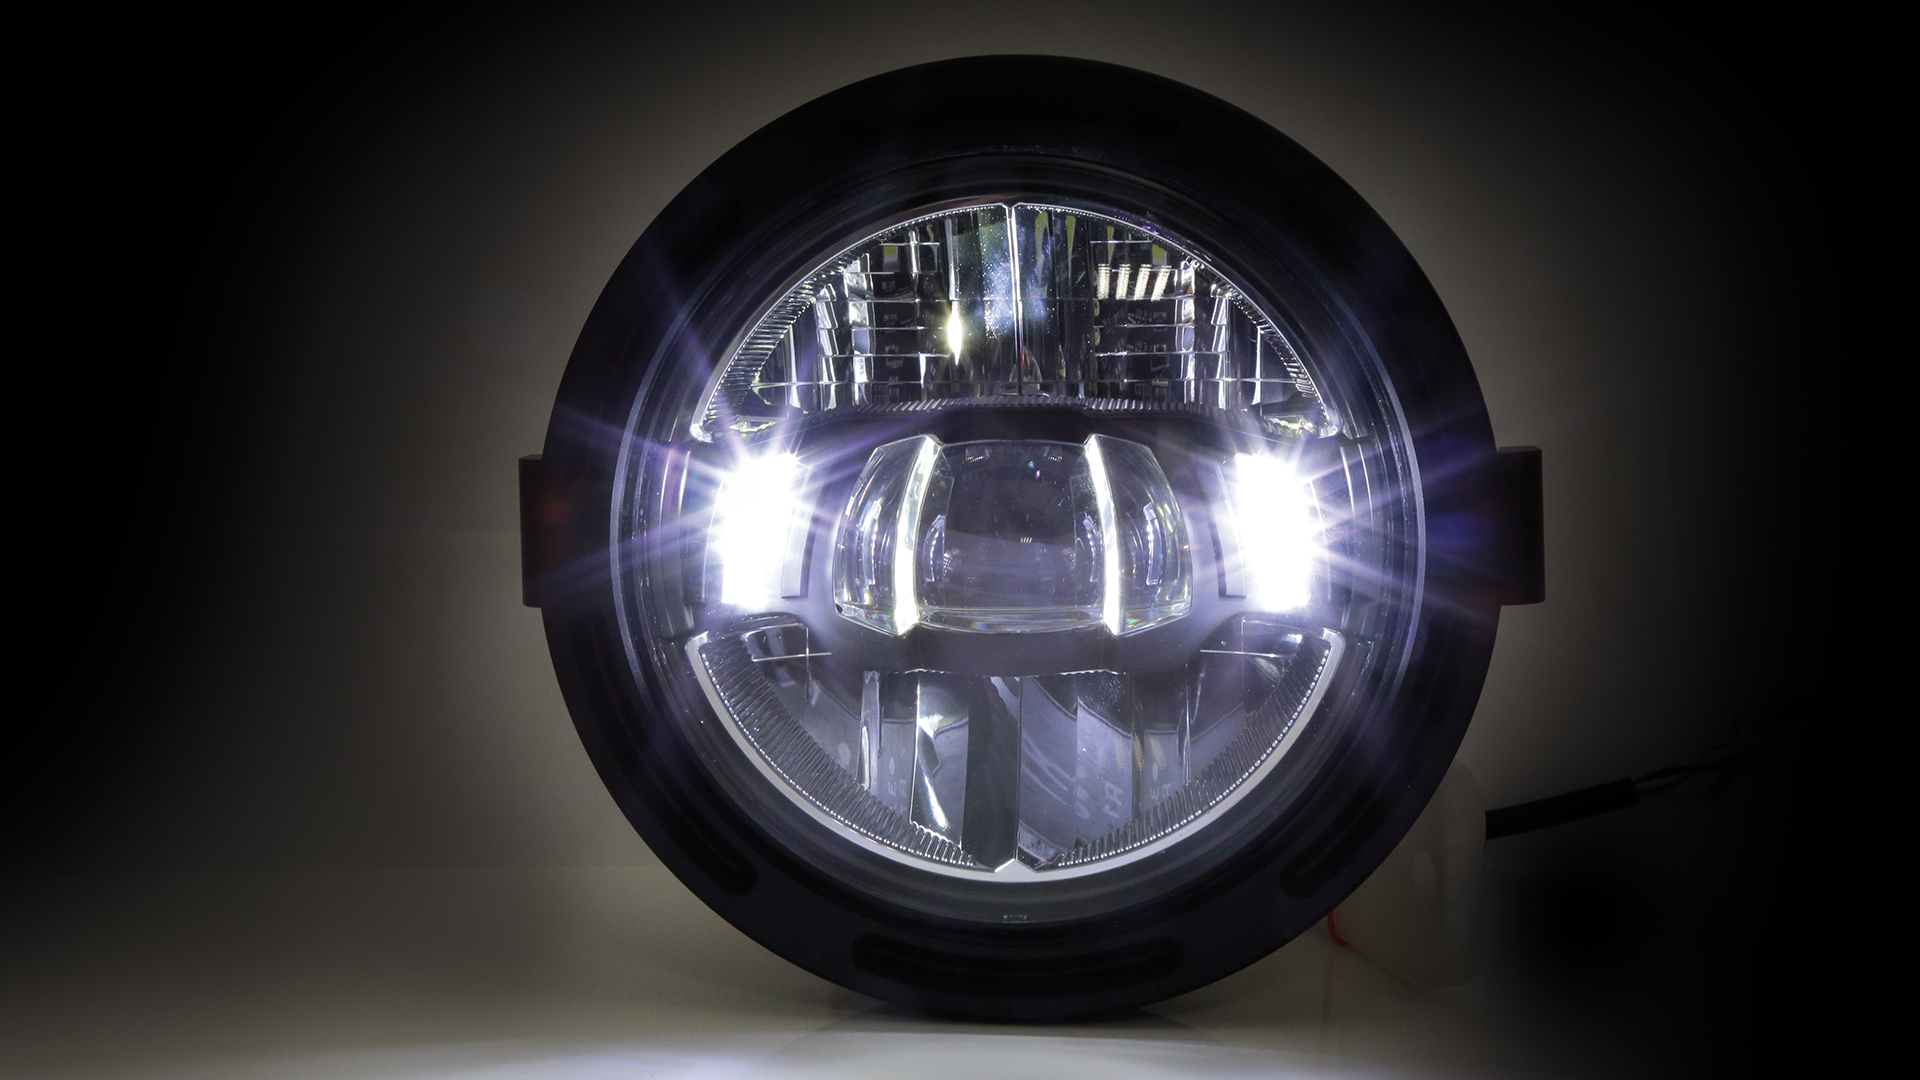 5 3/4 Zoll LED Scheinwerfer FRAME-R2 Typ 10, schwarz. Erhältlich mit seitlicher und unterer Befestigung, E-geprüft.